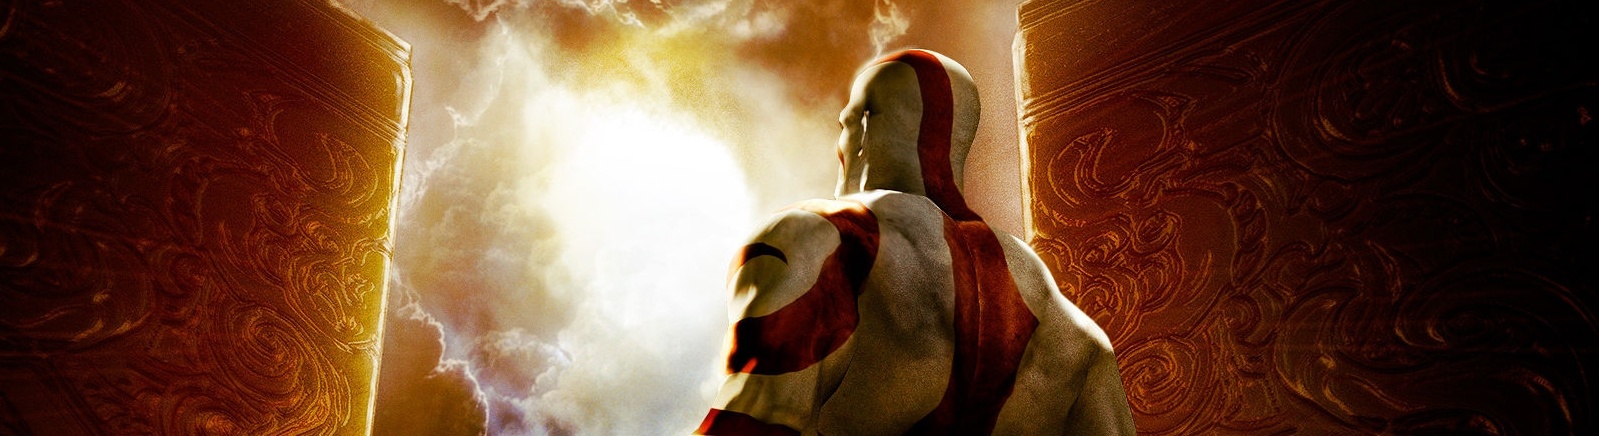 Дата выхода God of War: Chains of Olympus  на PS3 и PSP в России и во всем мире